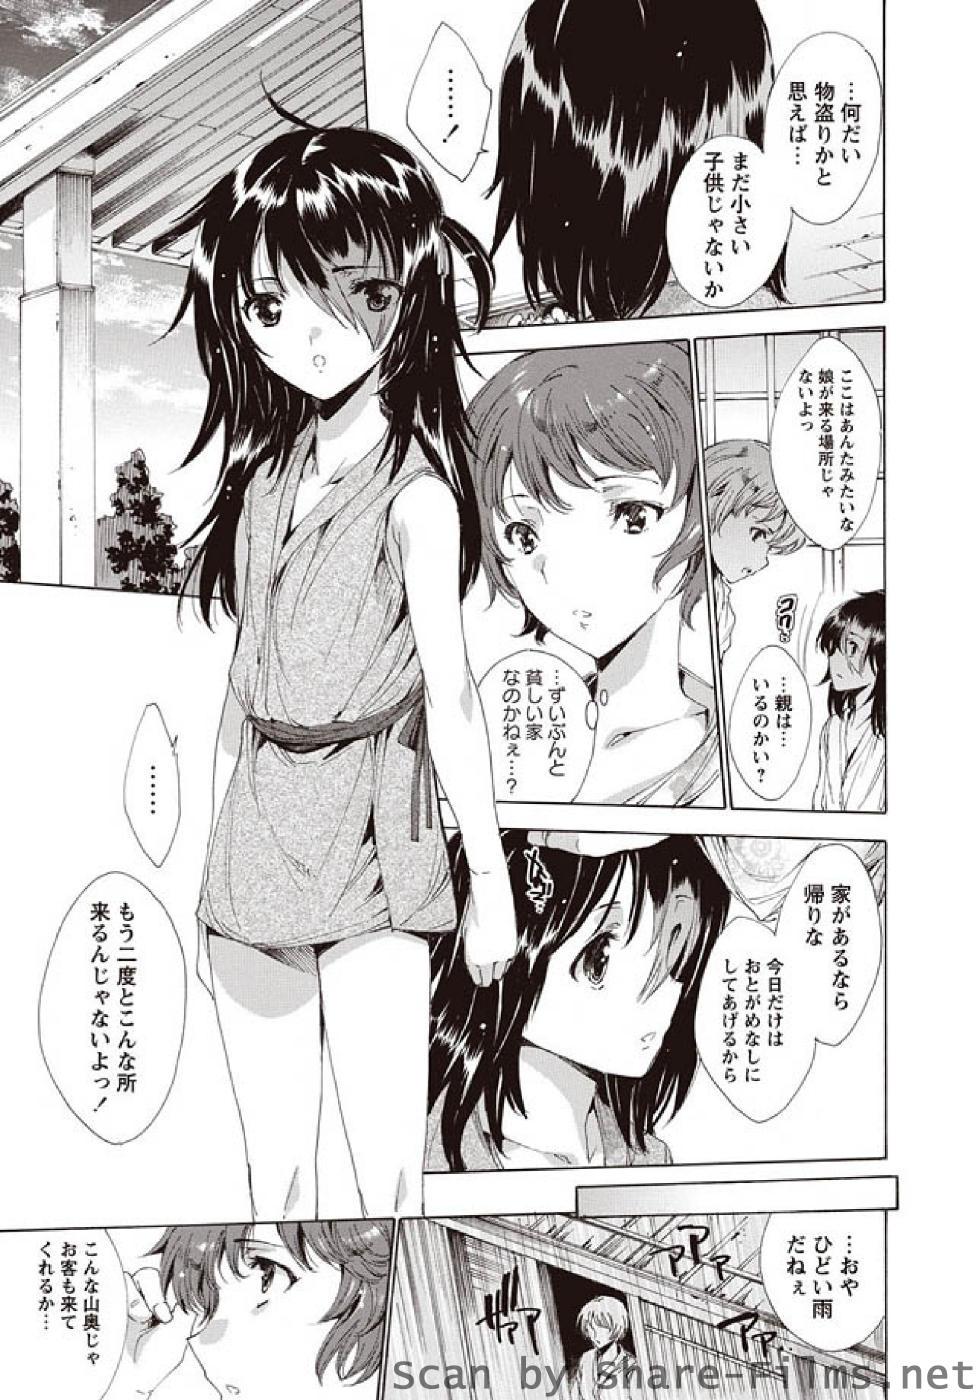 Sologirl Karyou Sakuragumi Etsu Fodendo - Page 10